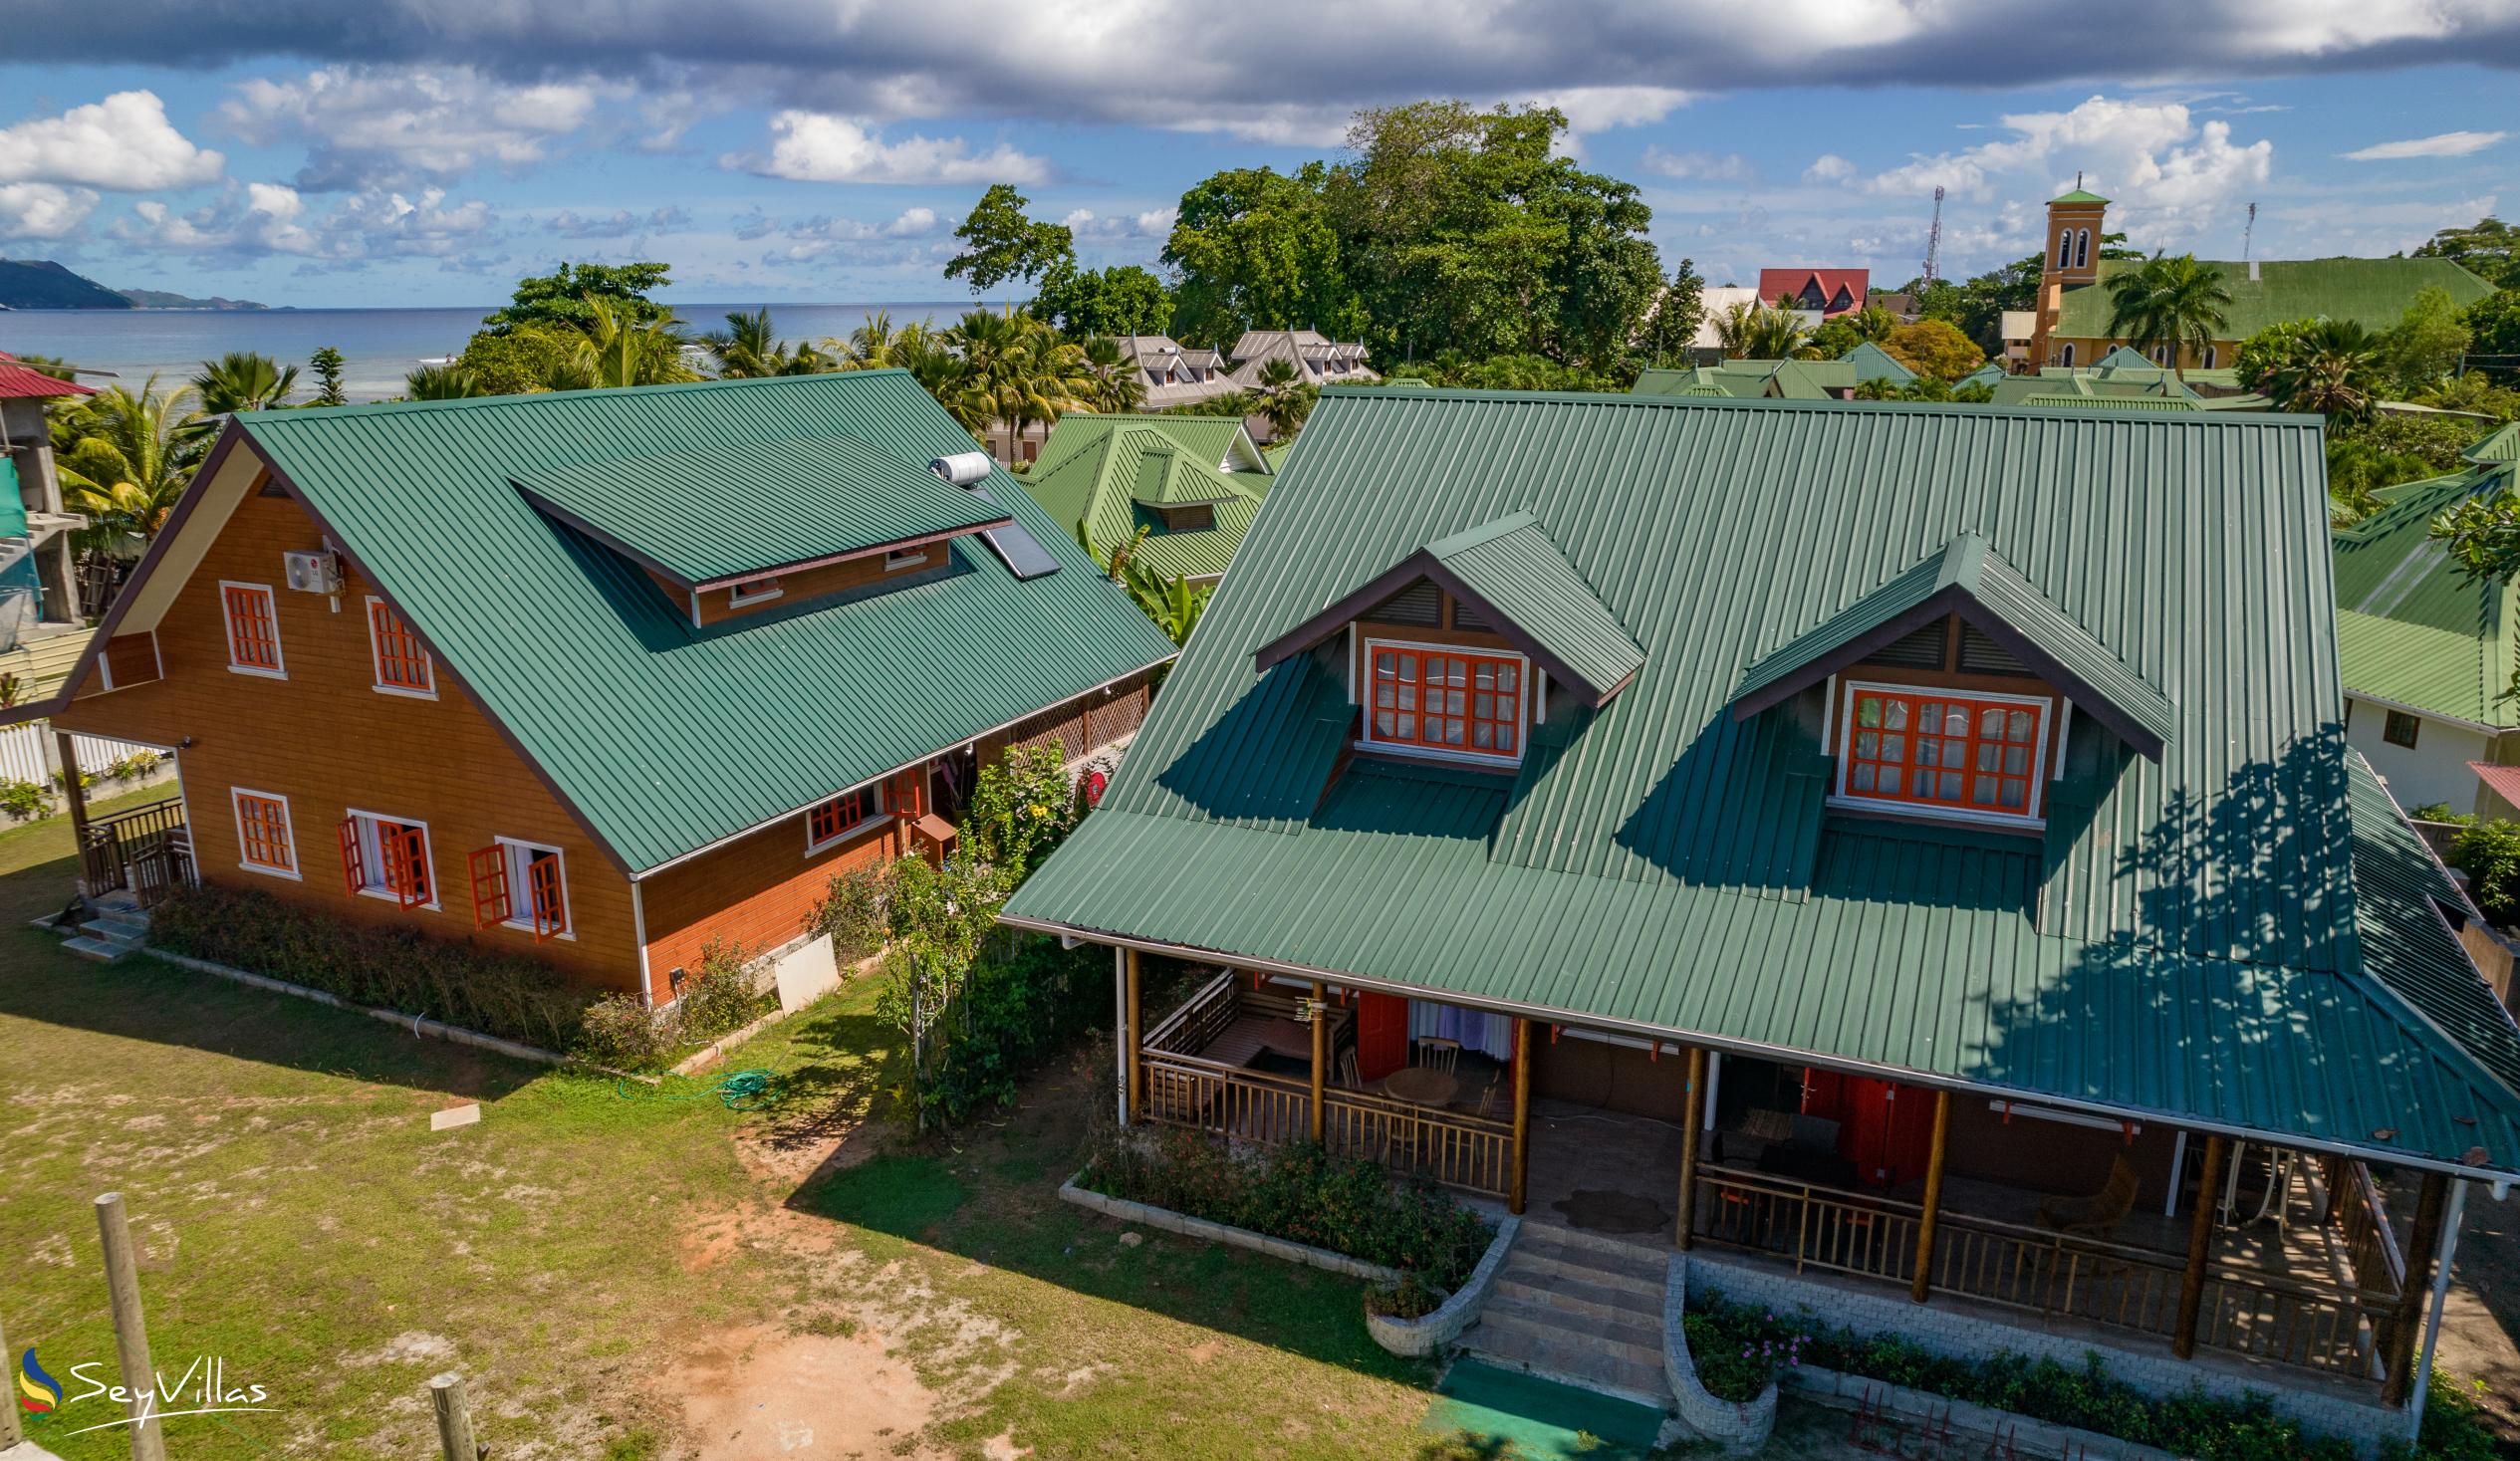 Foto 12: Ambiance Villa - Aussenbereich - La Digue (Seychellen)